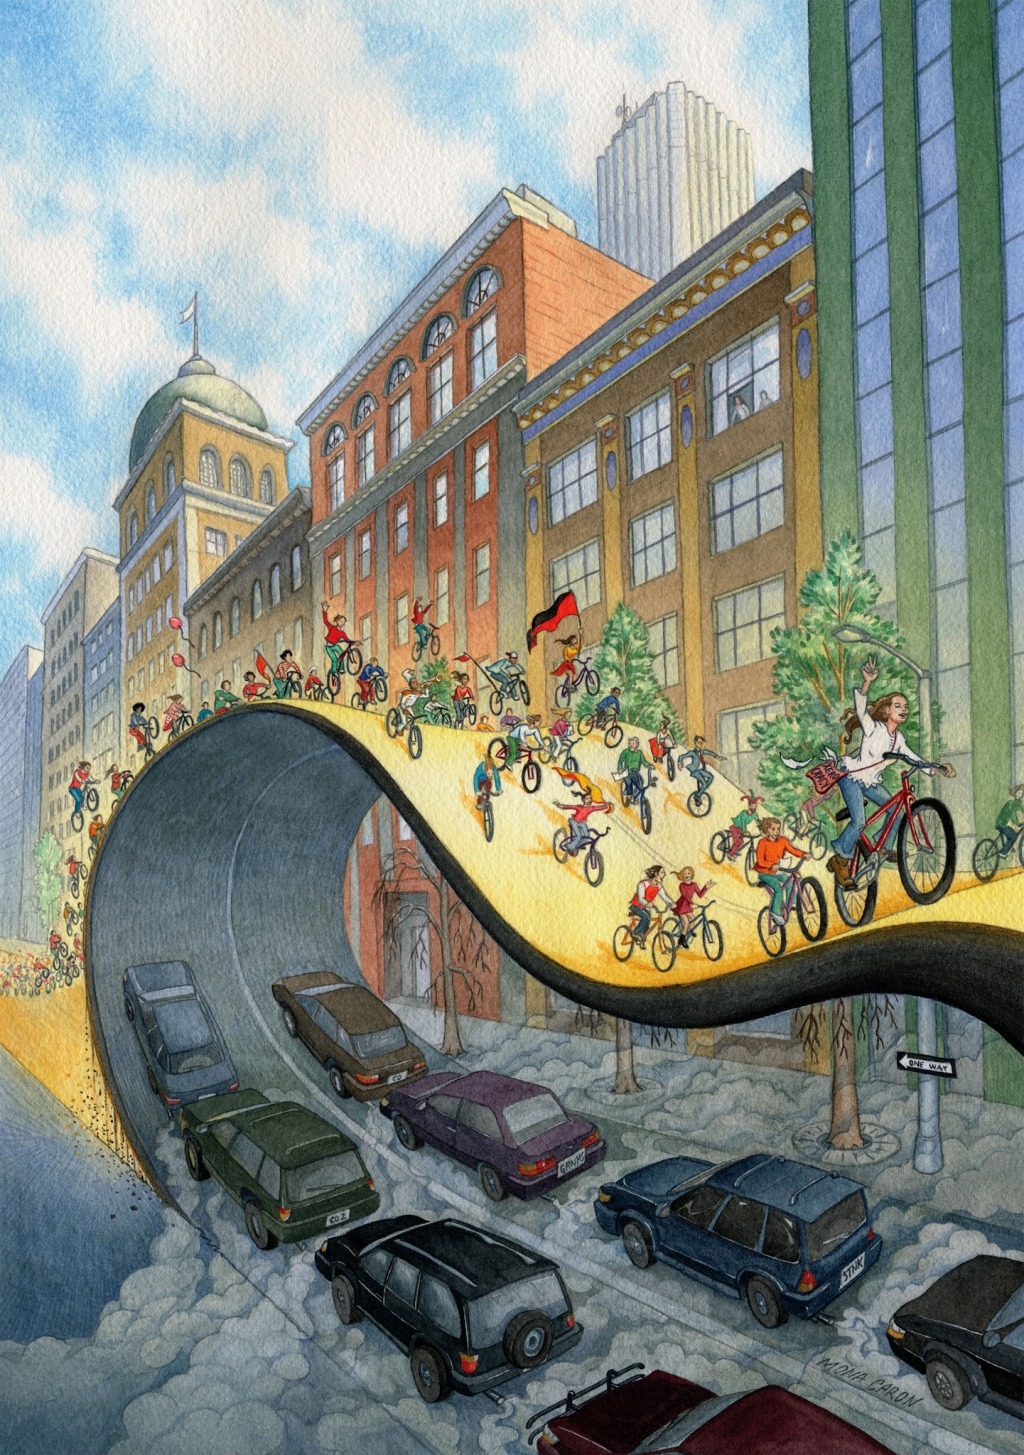 壁画"自行车进化"(Velorution ，2002 年)。Mona Caron的这幅水粉壁画最初是一本书的封面构思，后来被用作世界各地数十座城市自行车活动的海报。